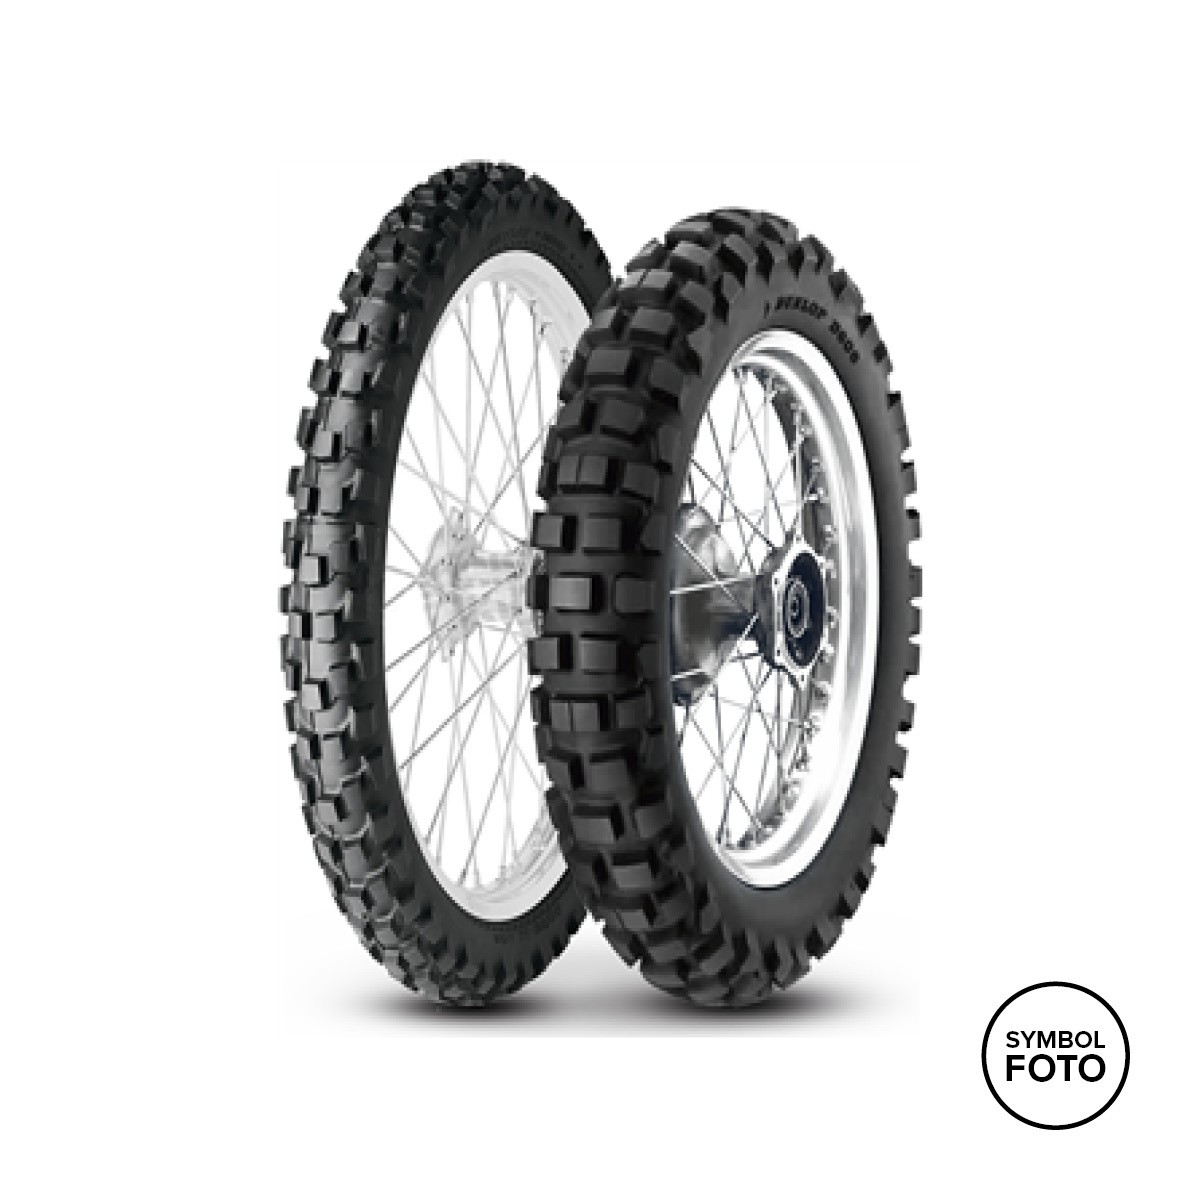 F Dunlop D606 online - Auner bei Reifen kaufen